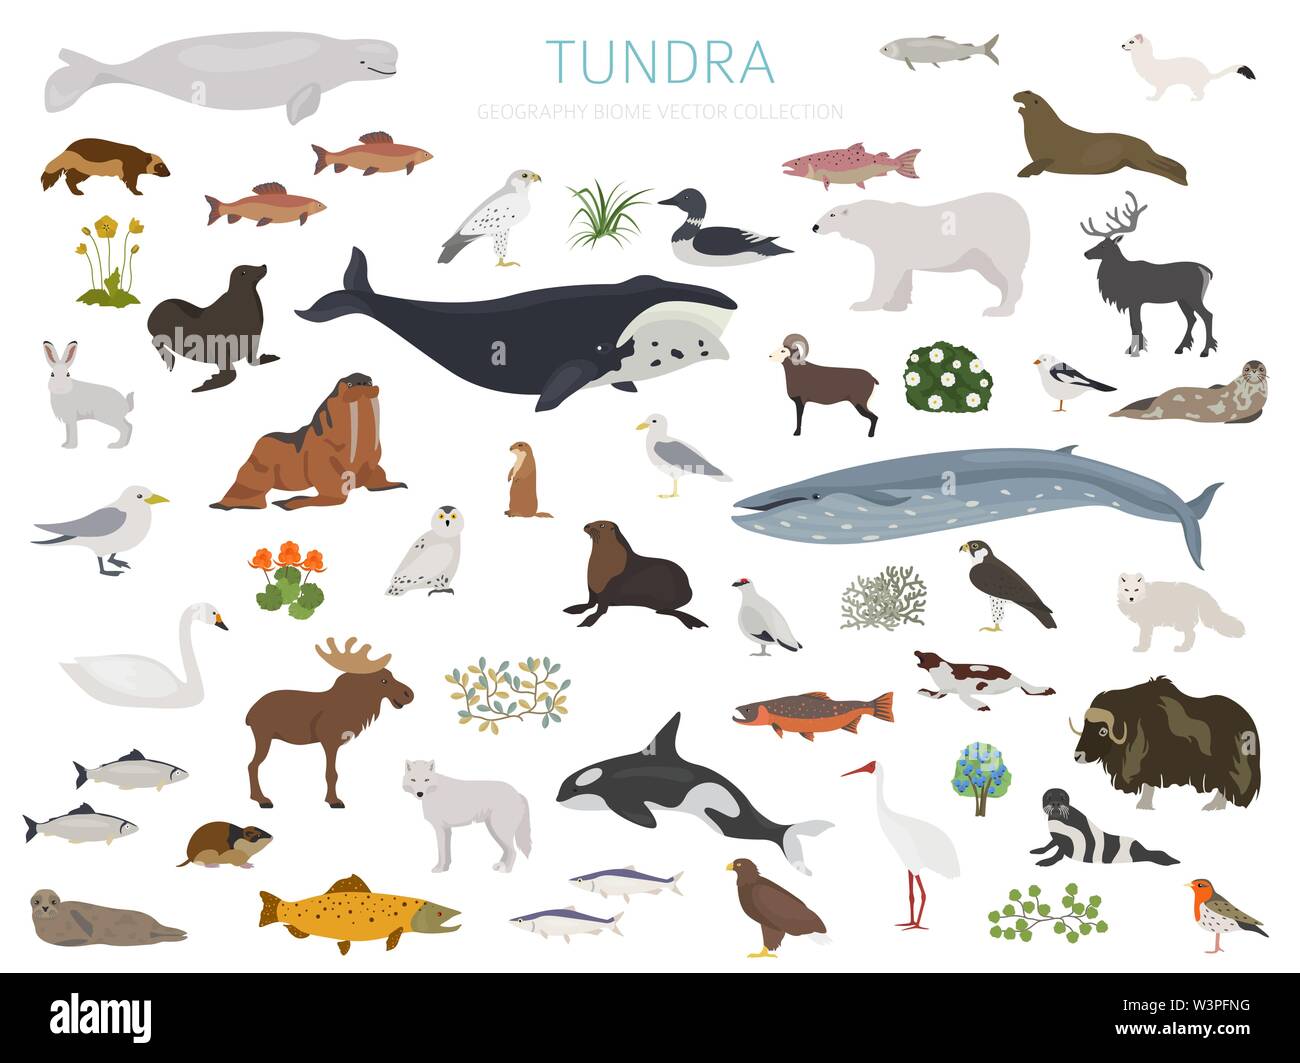 Biome Tundra. Ecosistema terrestre mappa del mondo. Arctic animali, uccelli, pesci e piante ed infografico design. Illustrazione Vettoriale Illustrazione Vettoriale